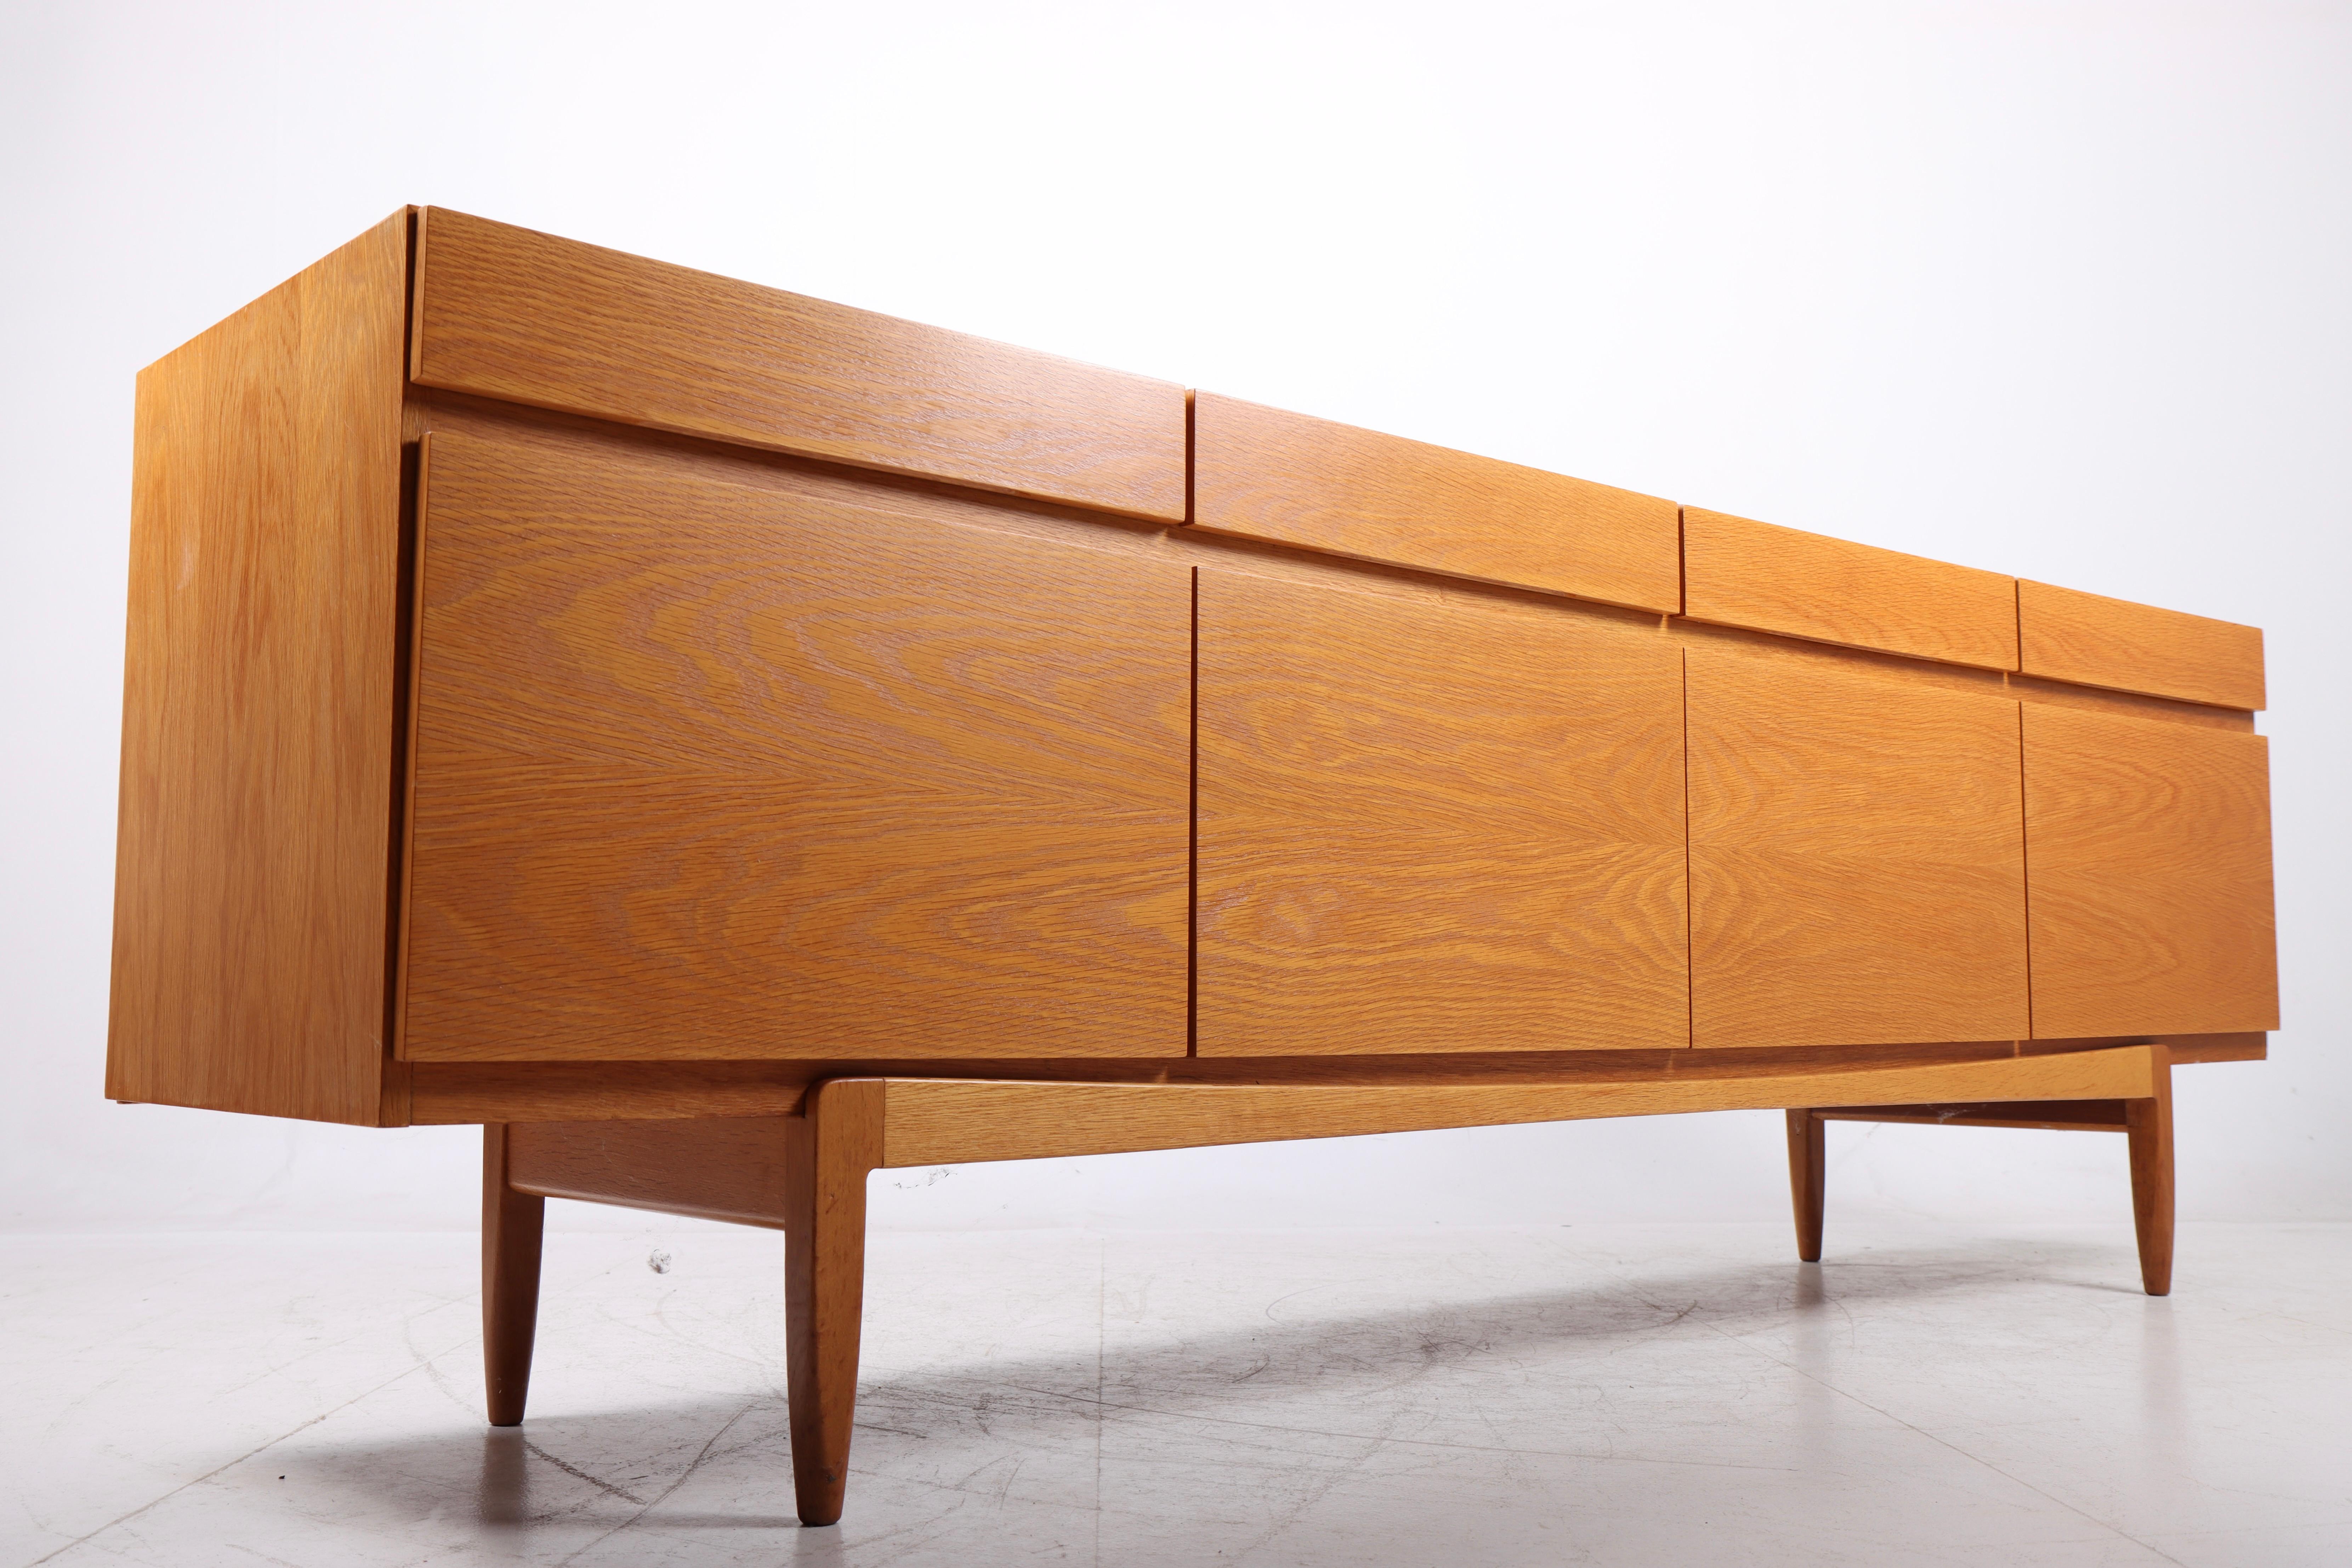 Danish Midcentury Sideboard in Oak Designed by Ib Kofod-Larsen, 1960s For Sale 2